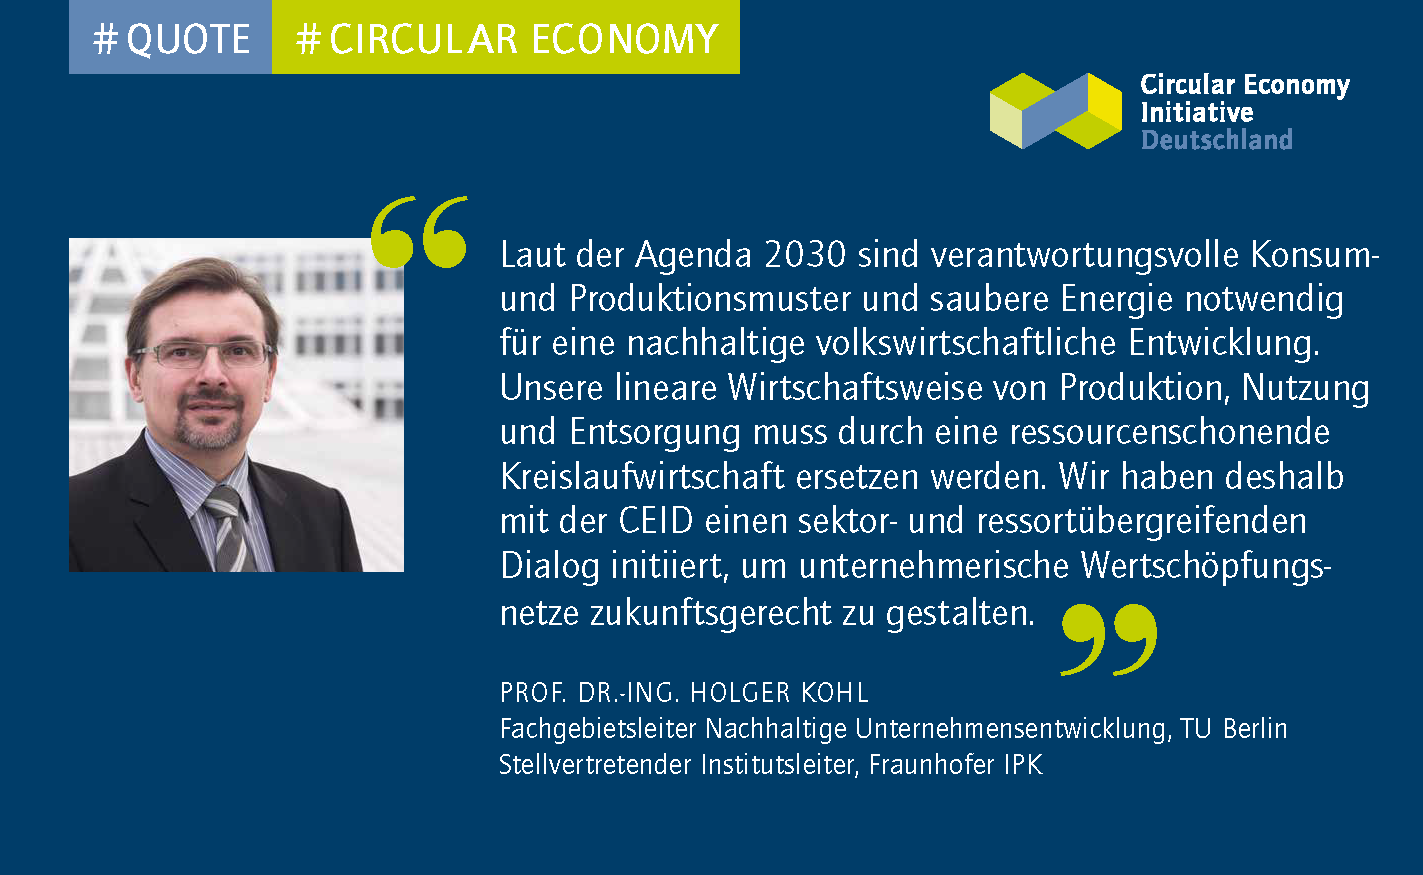 Fraunhofer IPK-Kohl-CEID.png